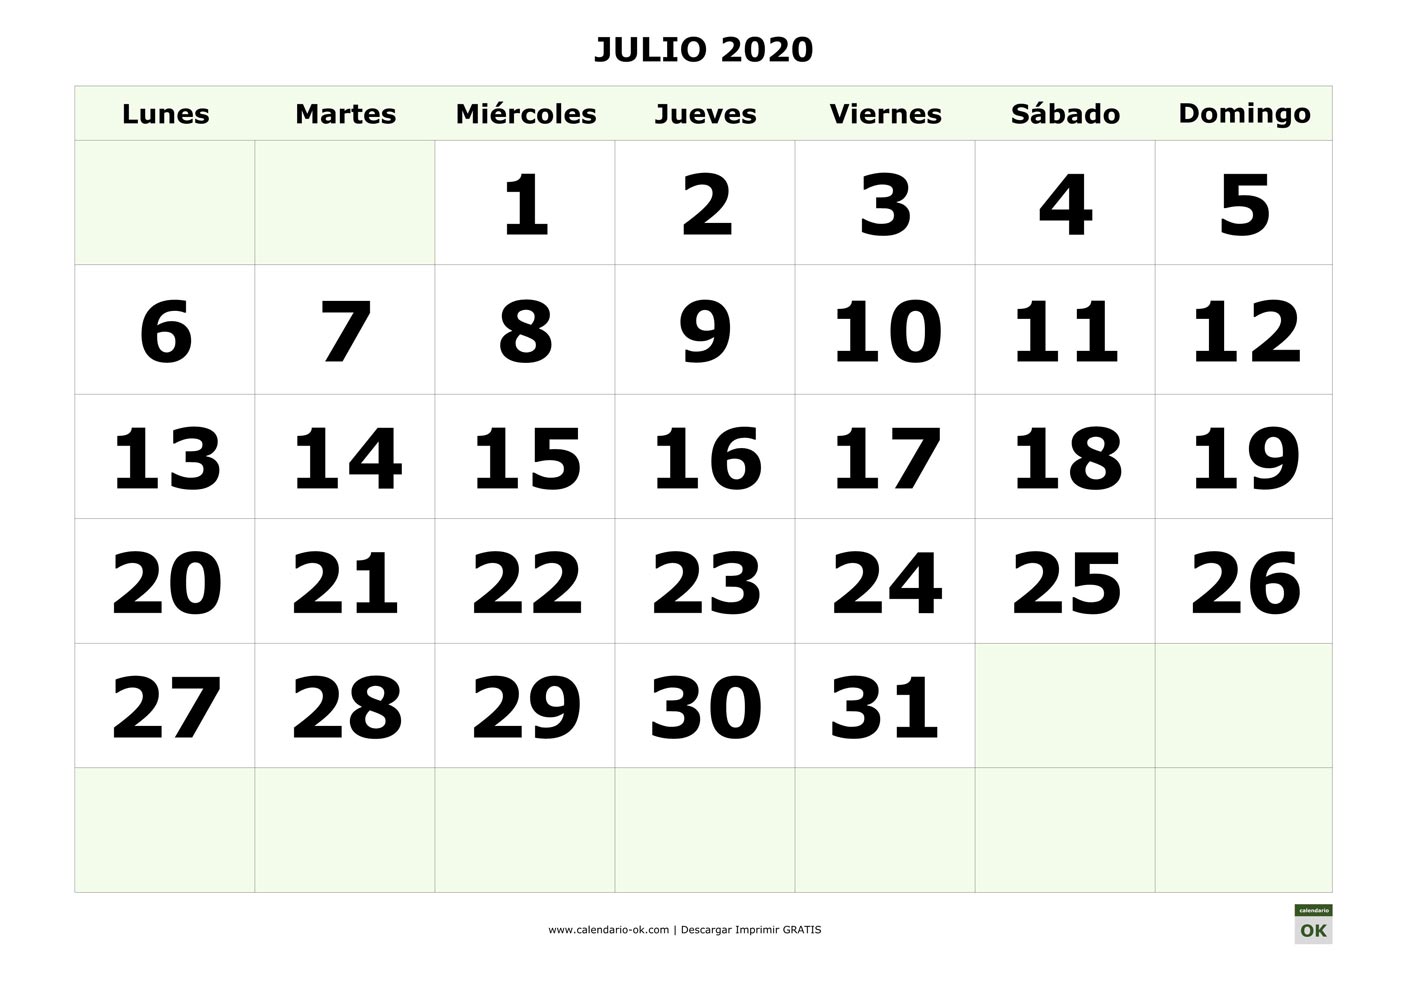 JULIO 2020 con NUMEROS GRANDES